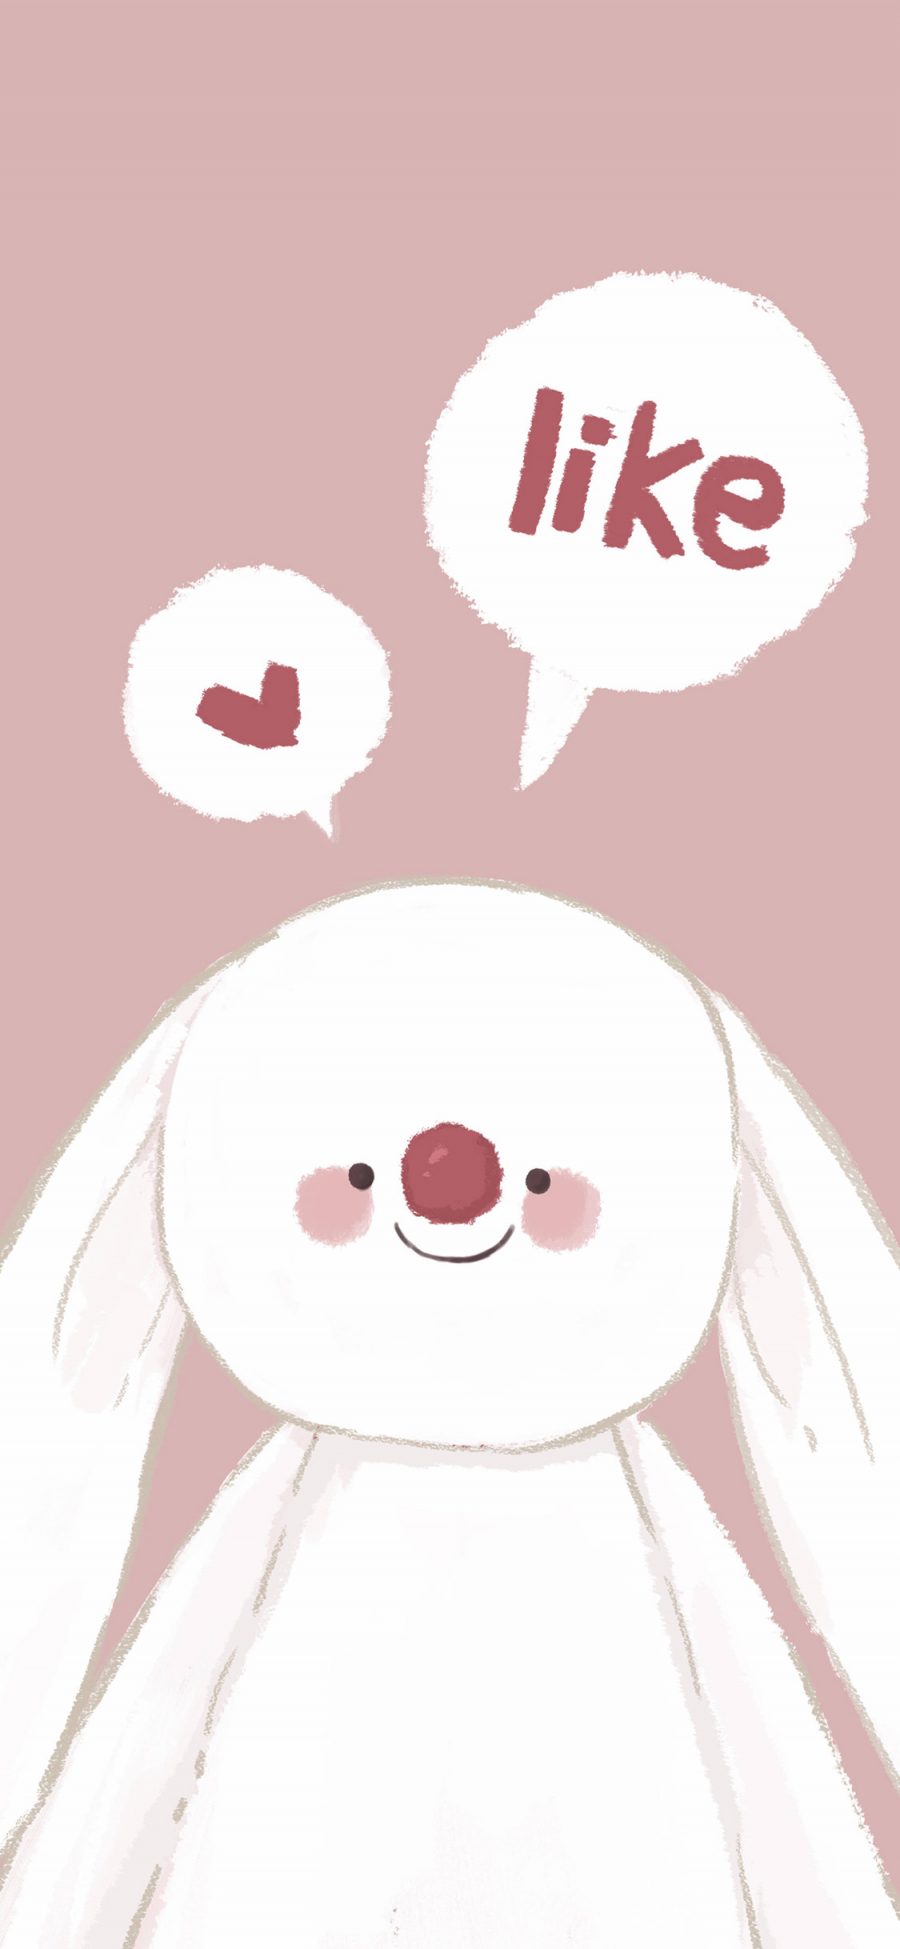 [2436×1125]卡通 兔子 like 爱心 苹果手机动漫壁纸图片